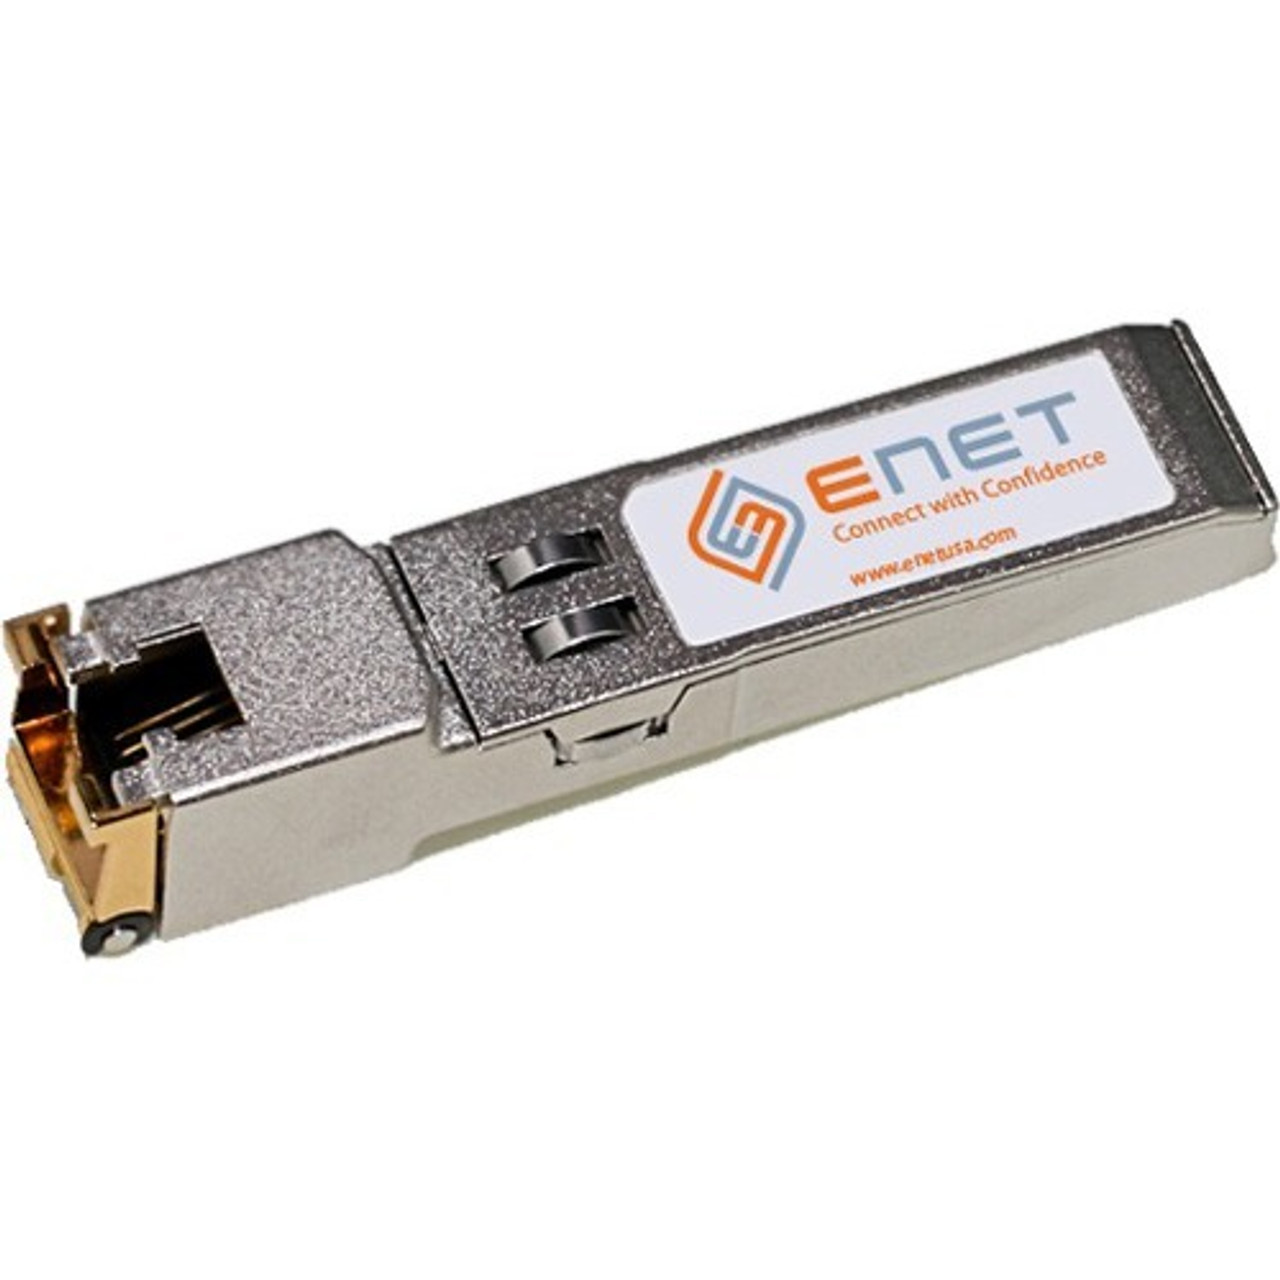 ENET 01-SSC-9791-ENC